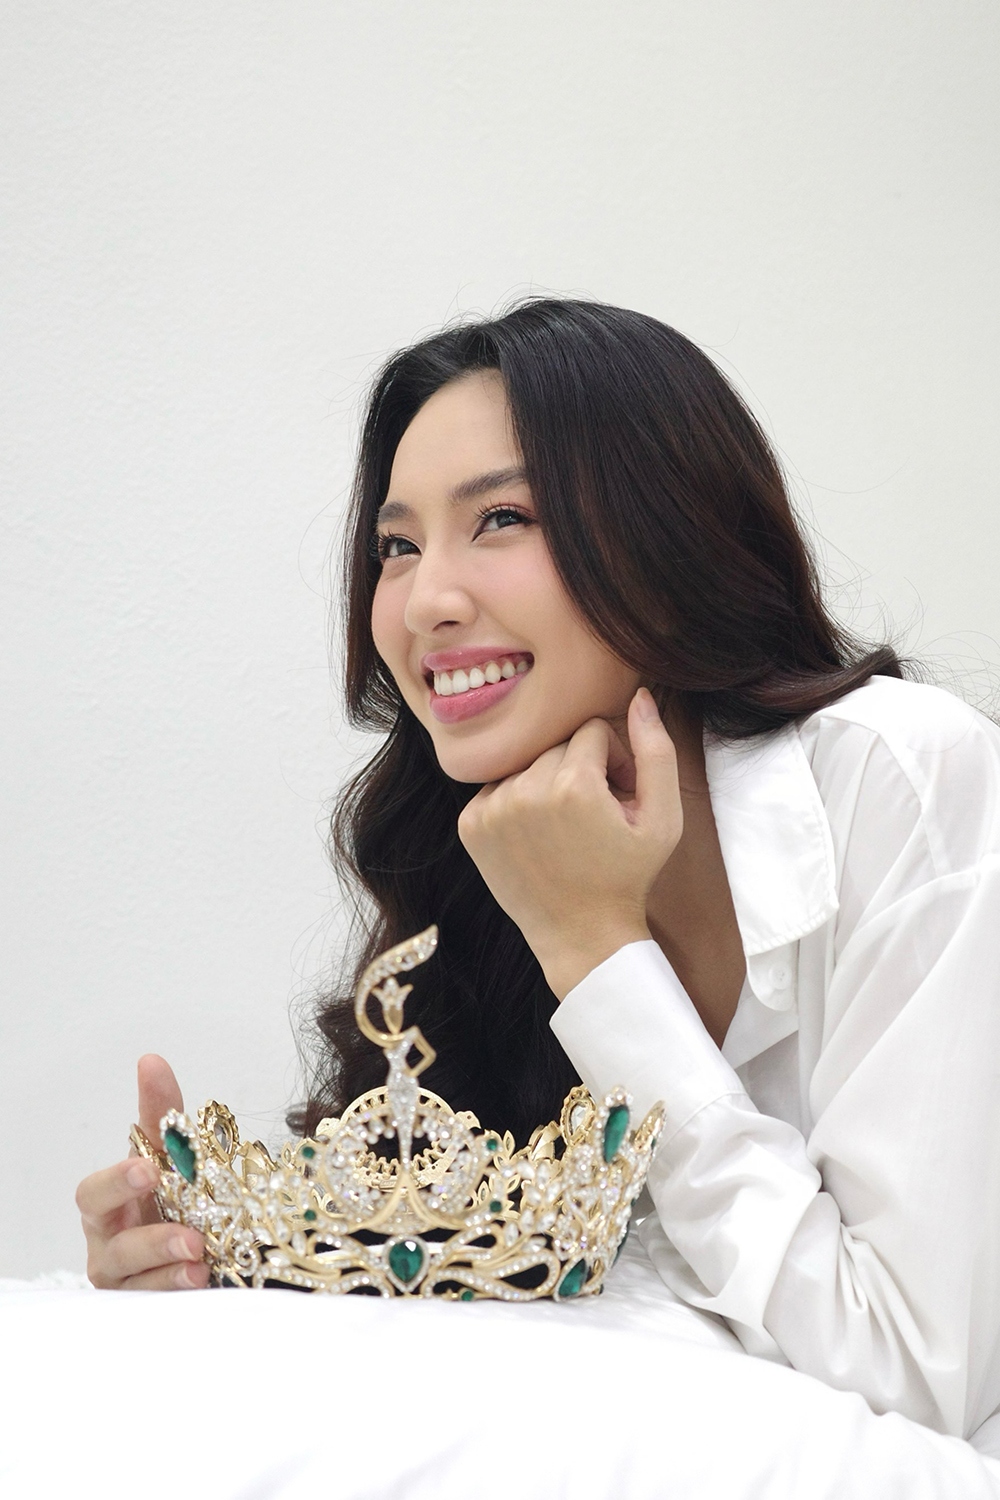 Hoa hậu Thùy Tiên đẹp dịu dàng trong bộ ảnh kỷ niệm 2 năm đăng quang - Ảnh 5.